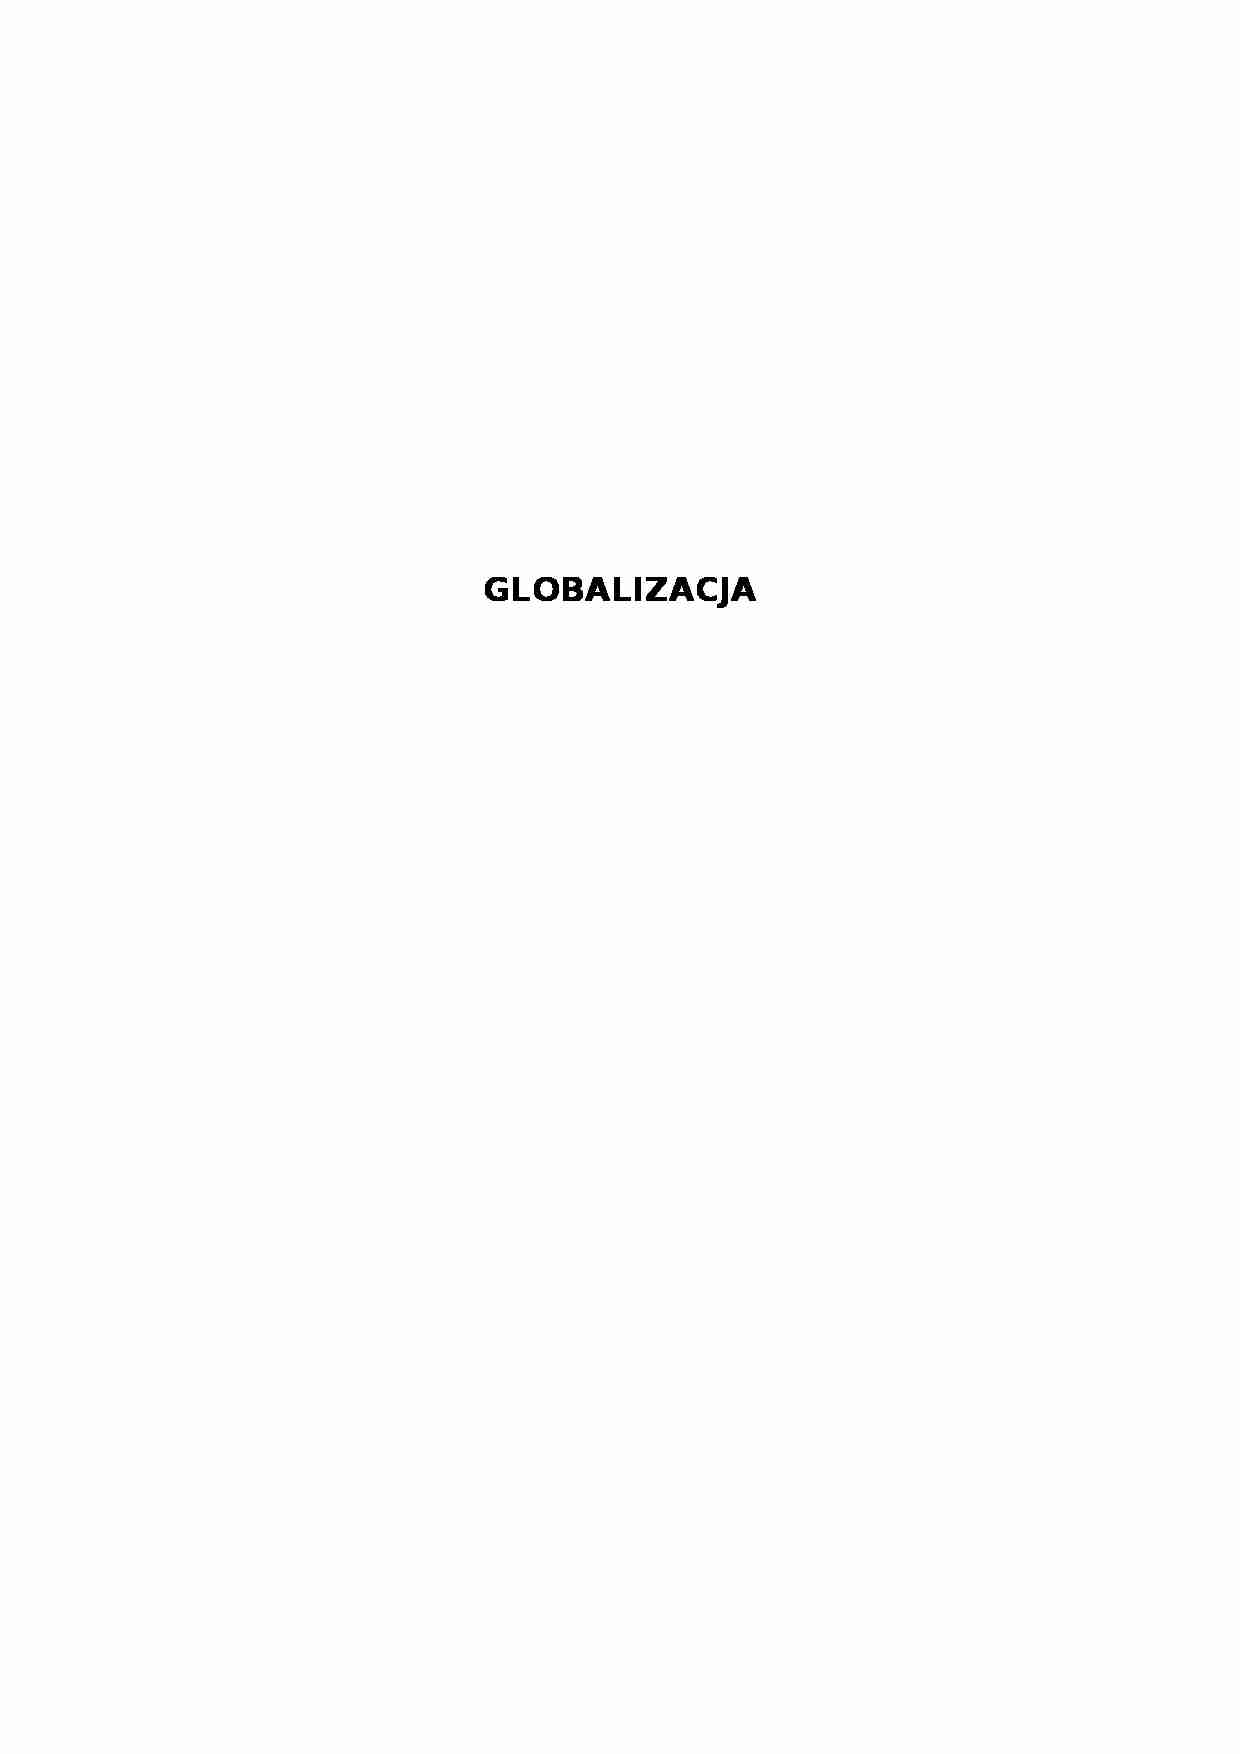 Globalizacja - Bank Światowy - strona 1